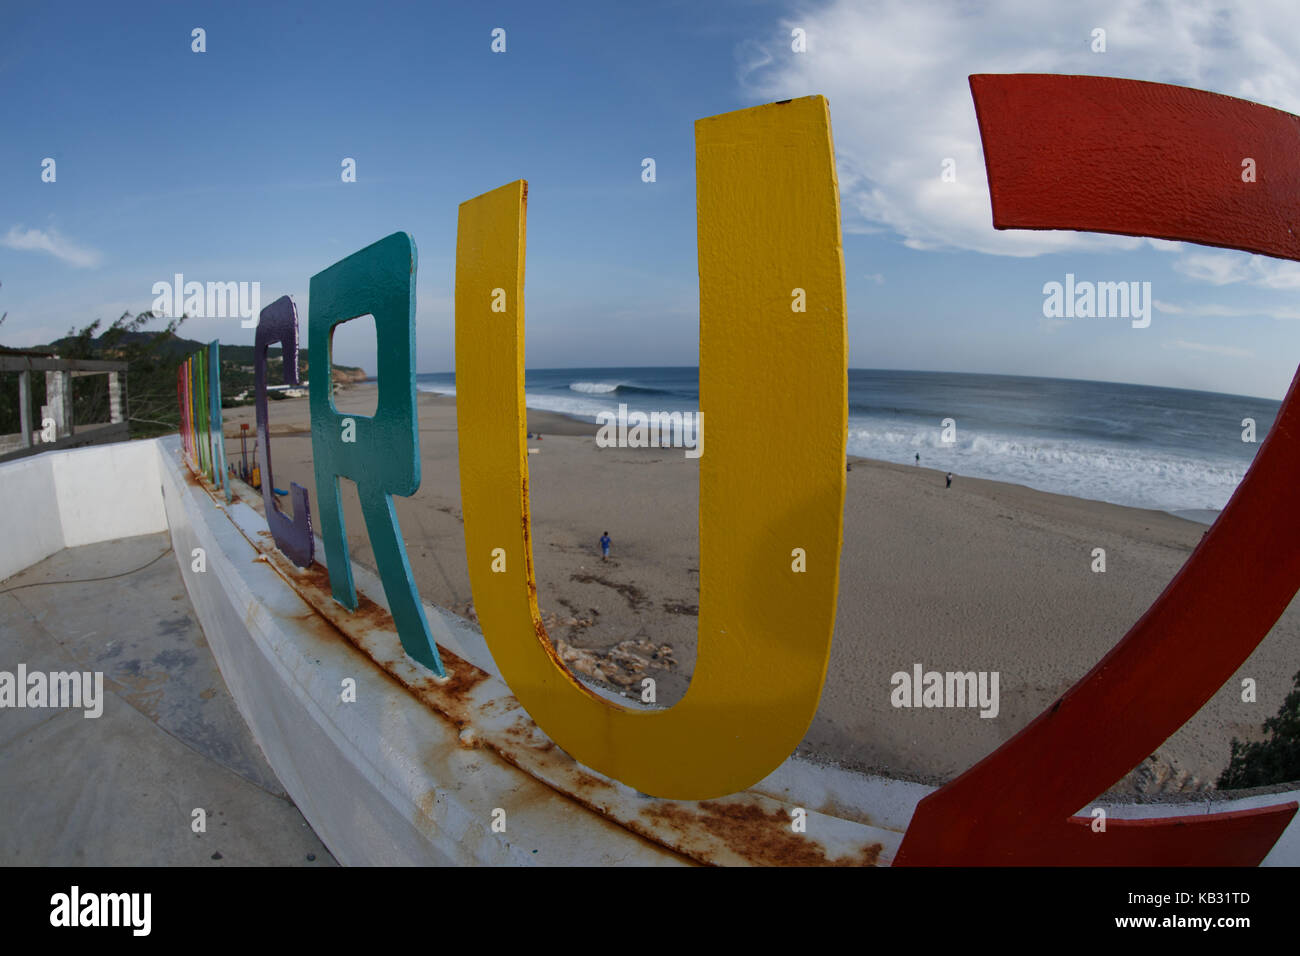 Une vague parfaite est perçu entre les lettres d'une plage surplombent à Salina Cruz, Oaxaca, Mexique. Le 22 juillet 2017. Banque D'Images